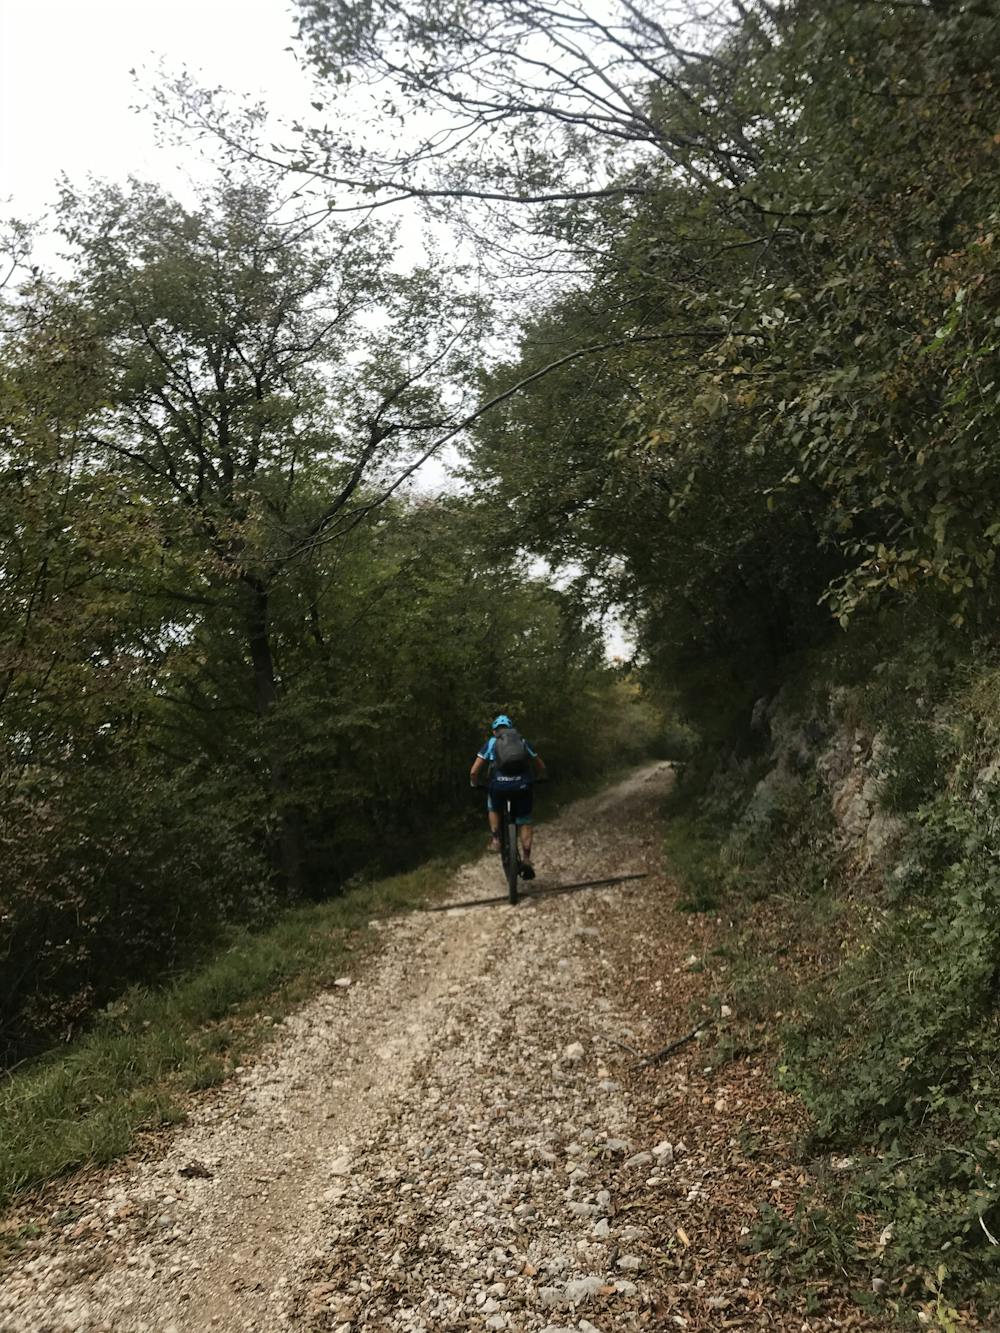 The climb towards Passo S. Barbara